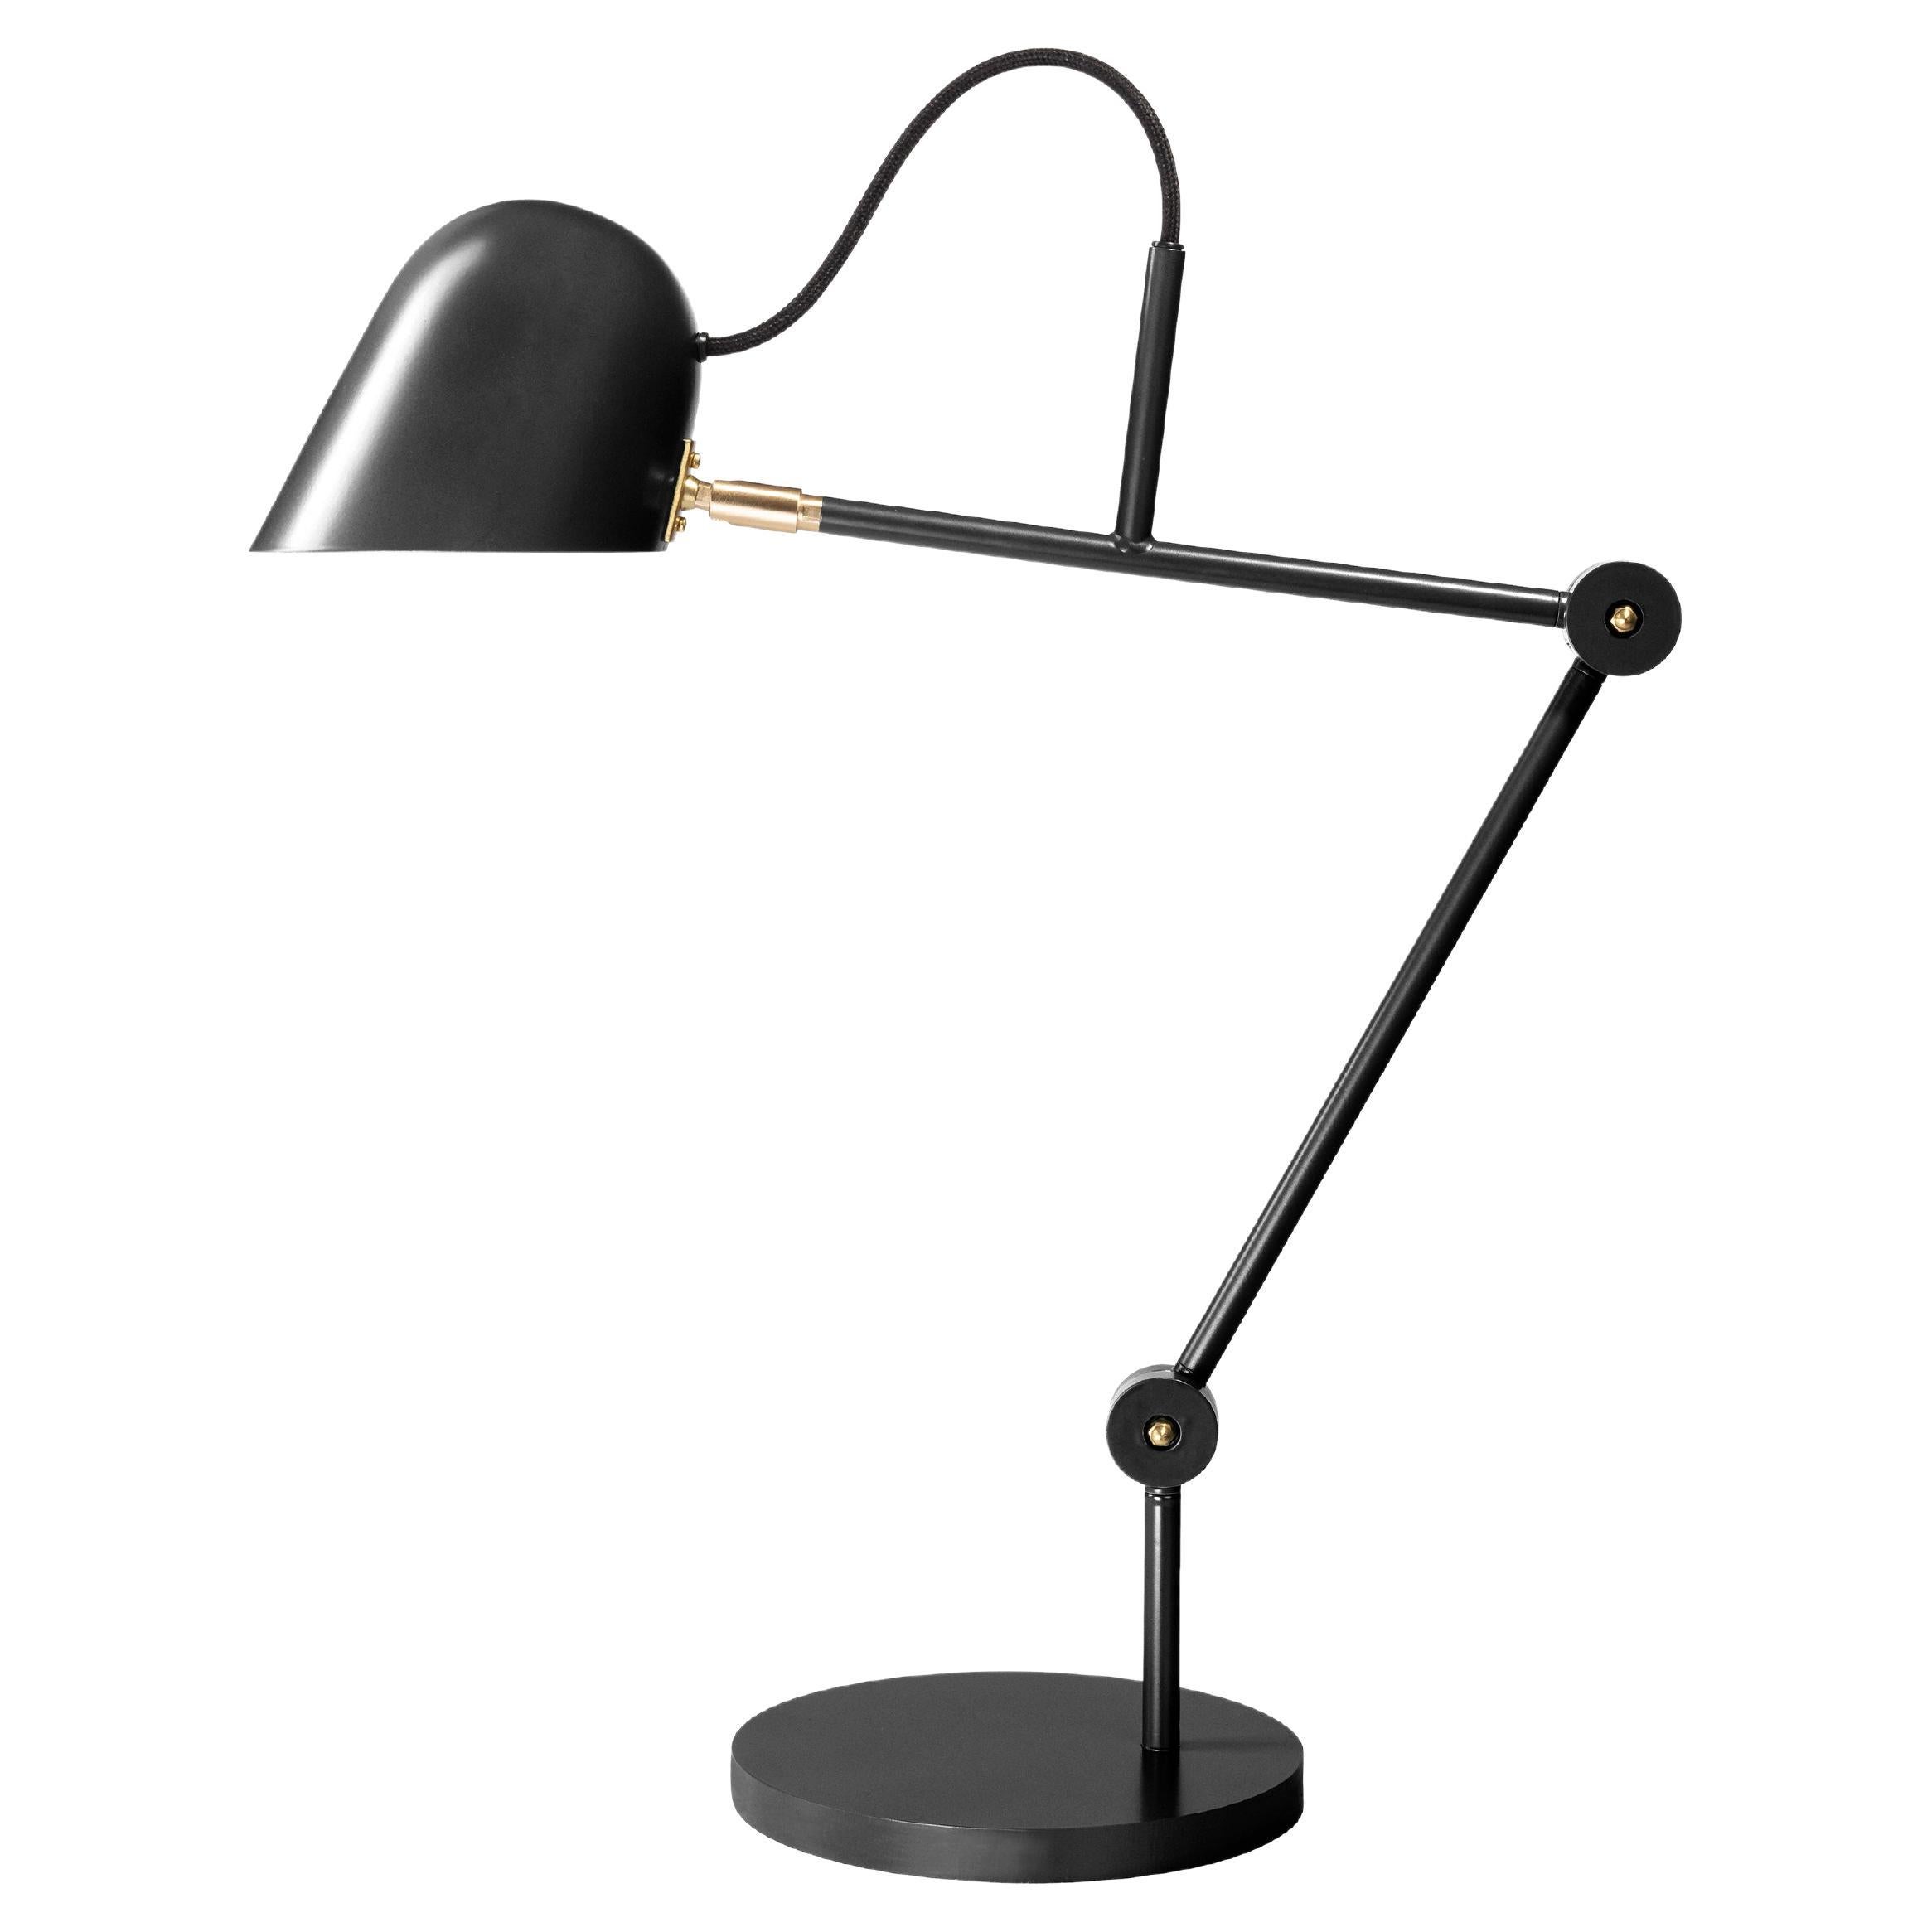 'Streck' Adjustable Table Lamp by Joel Karlsson for Örsjö in Warm Gray For Sale 5